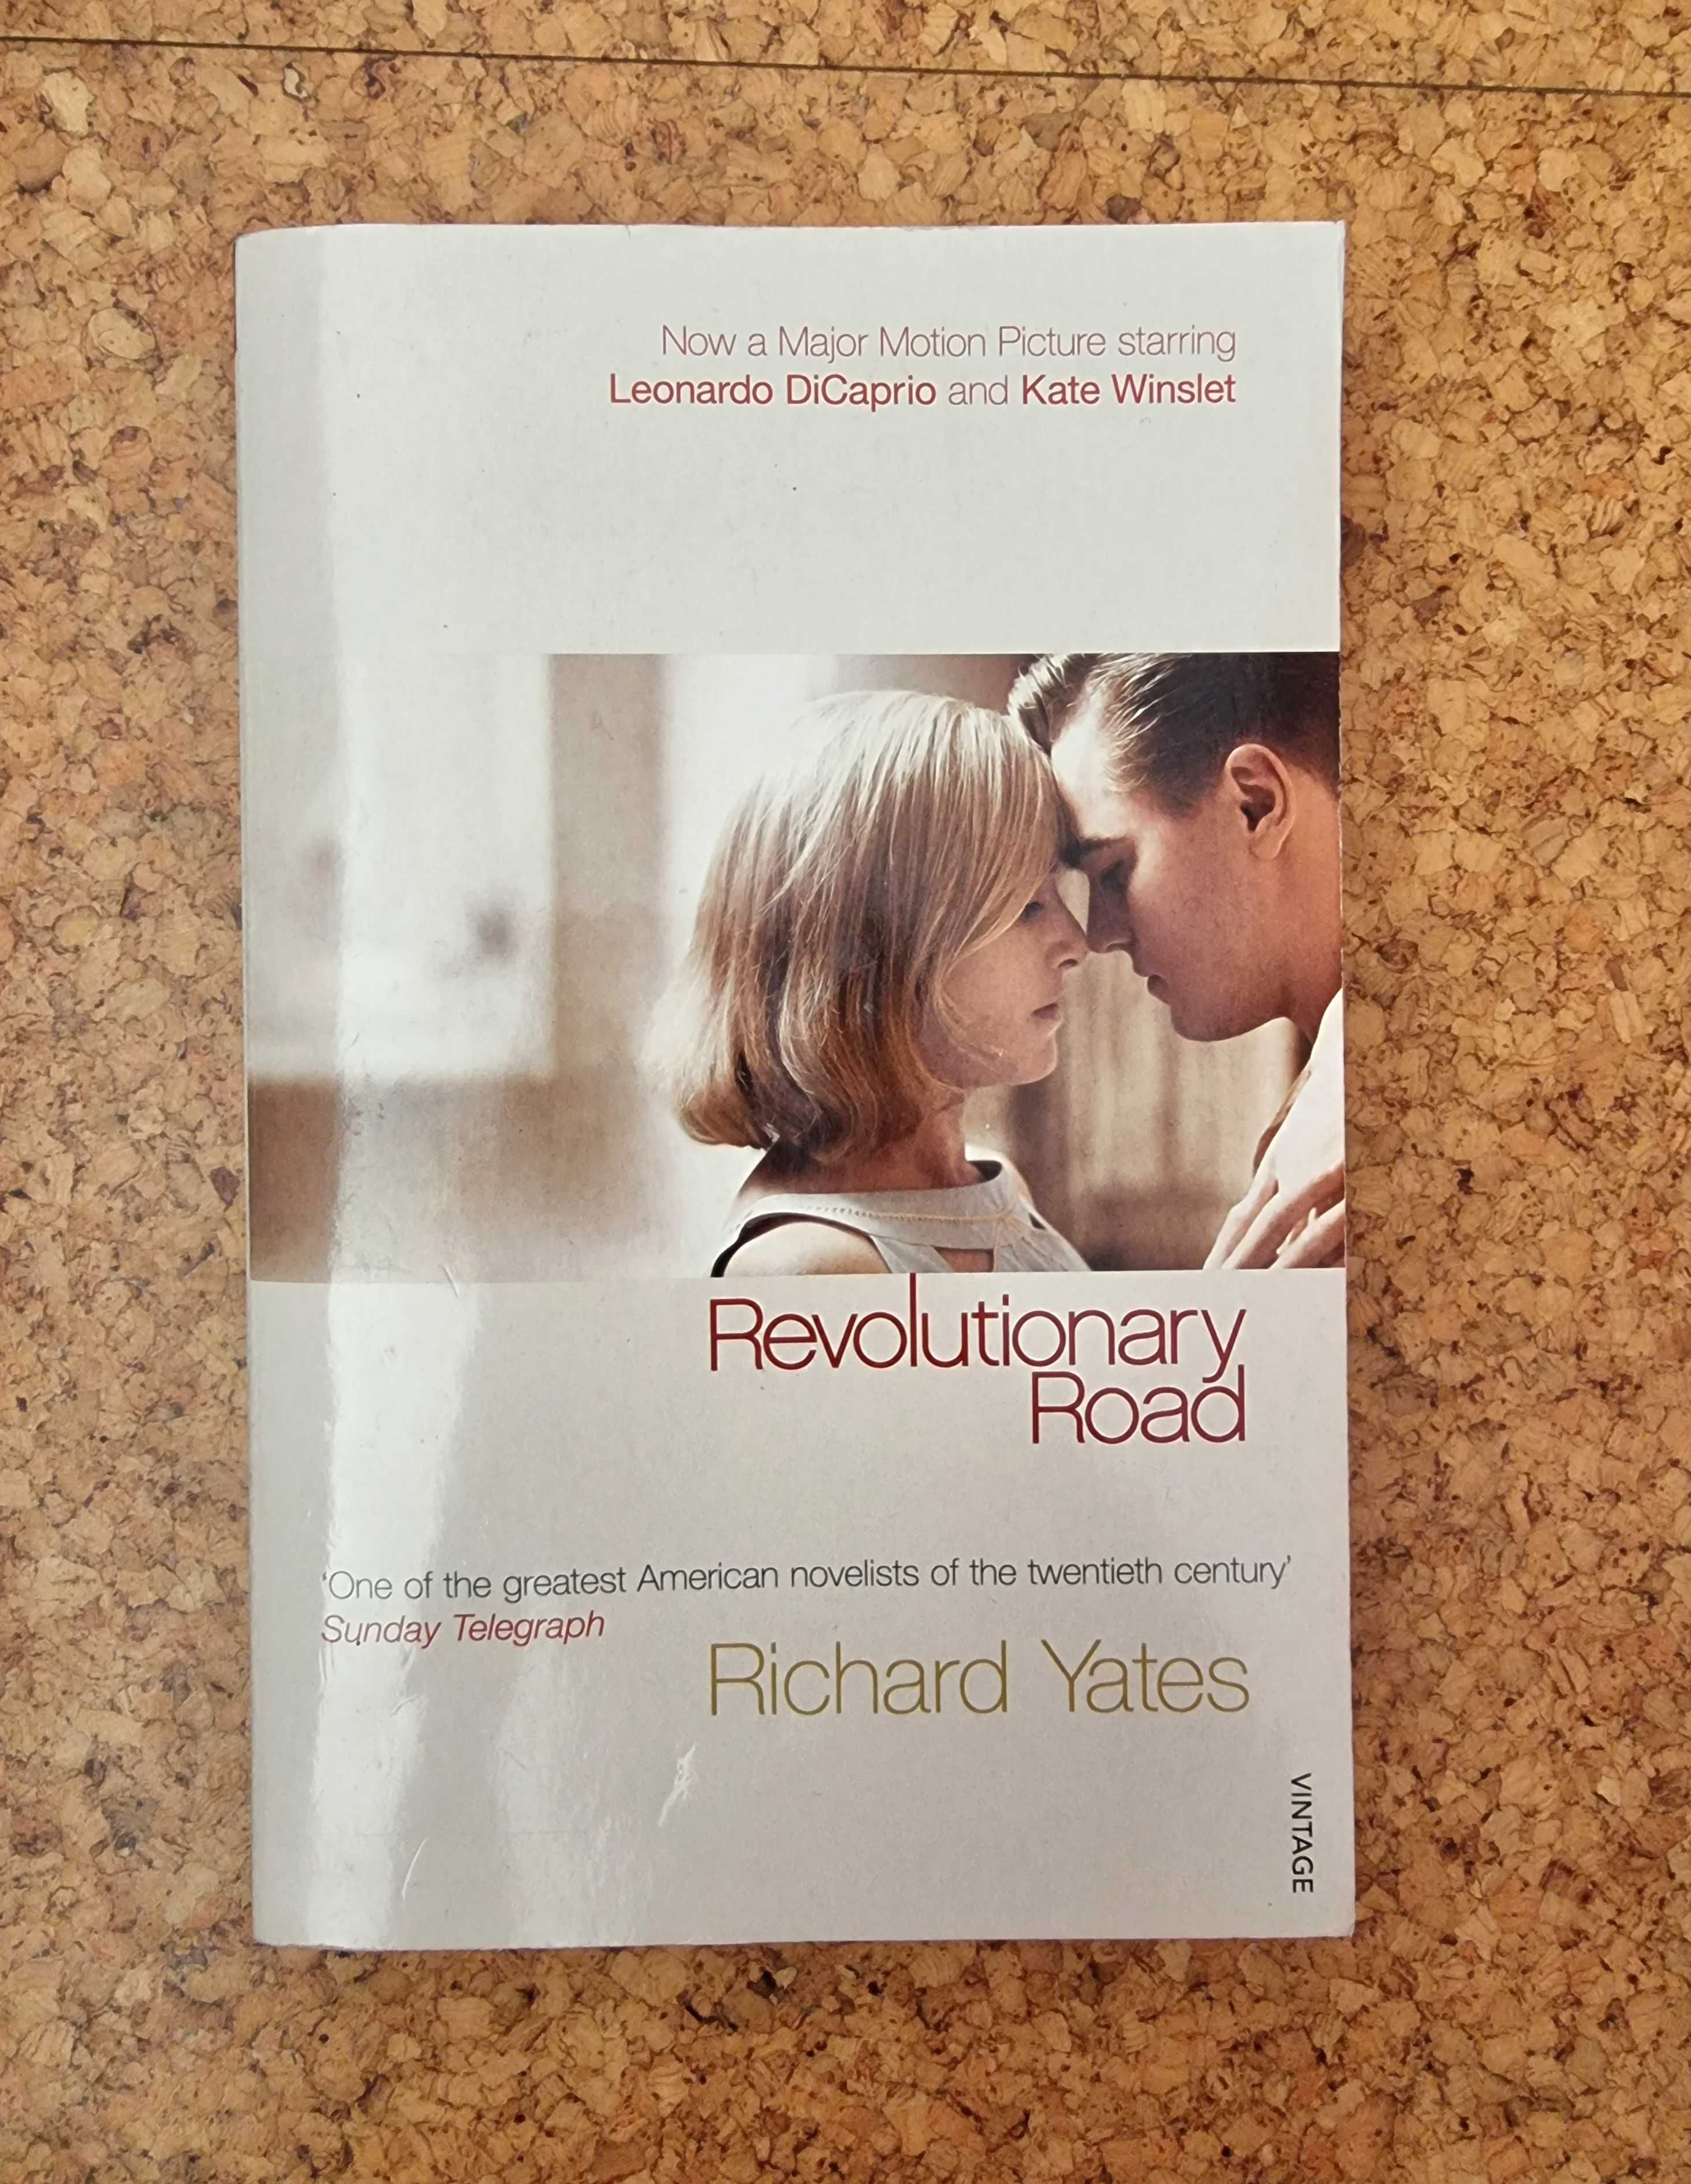 Livro "Revolutionary Road" de Richard Yates (em Inglês)